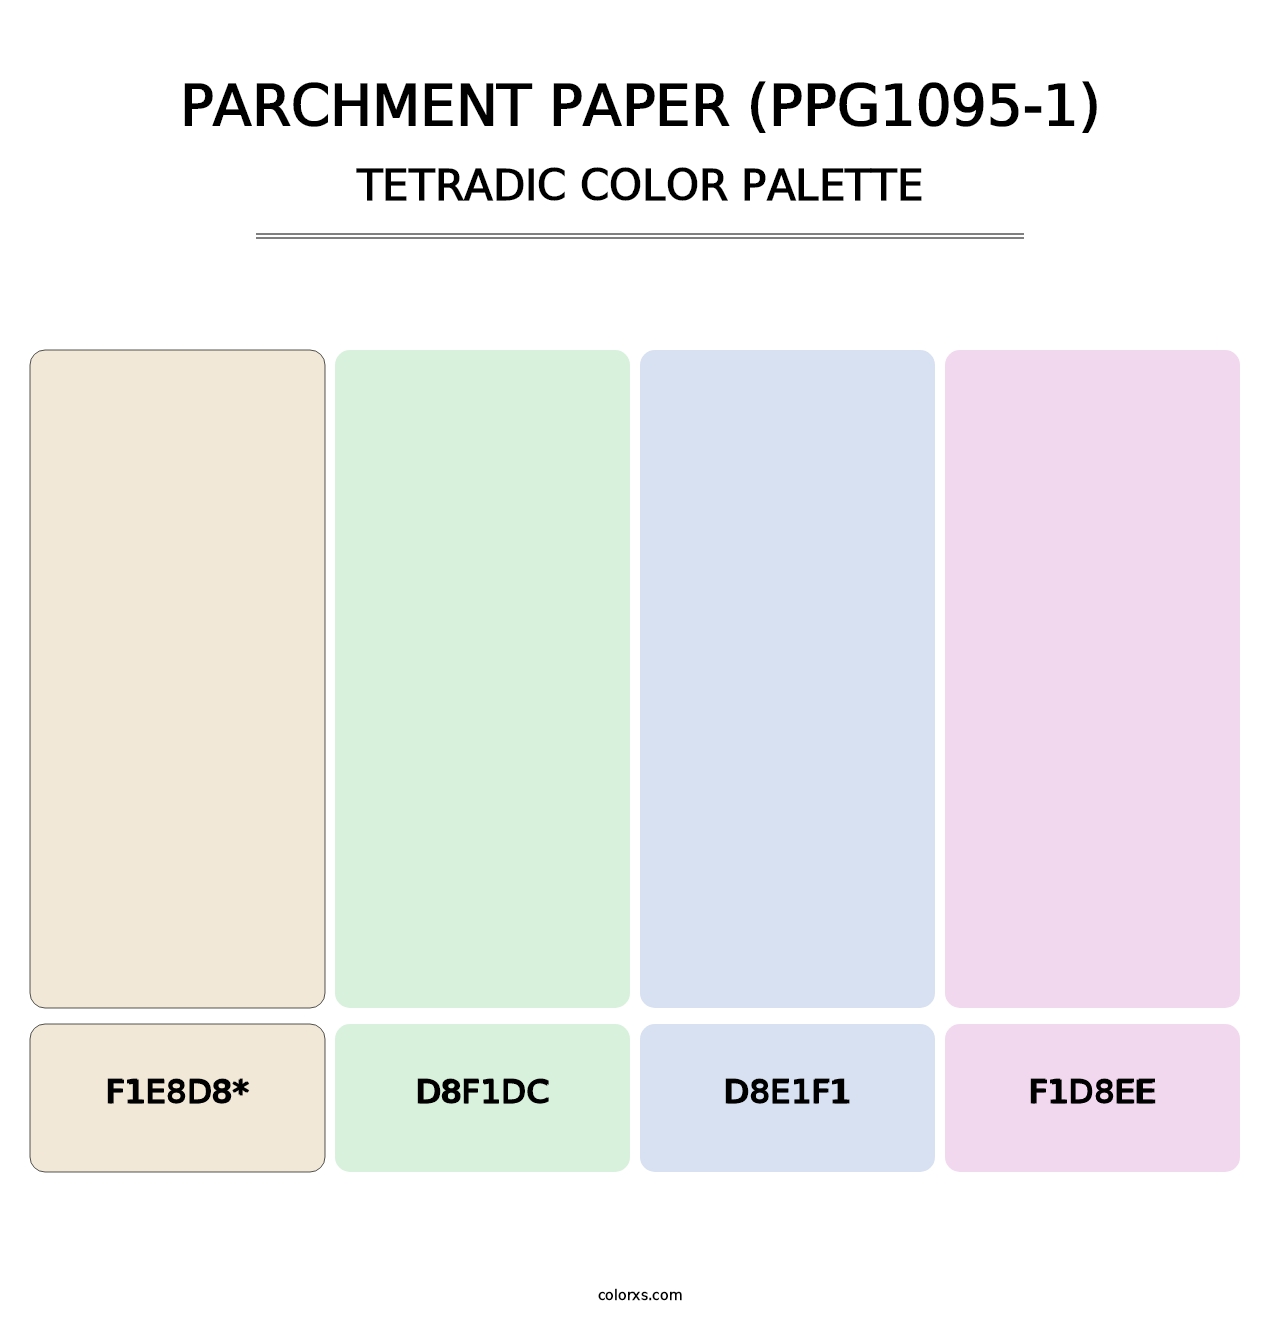 Parchment Paper (PPG1095-1) - Tetradic Color Palette